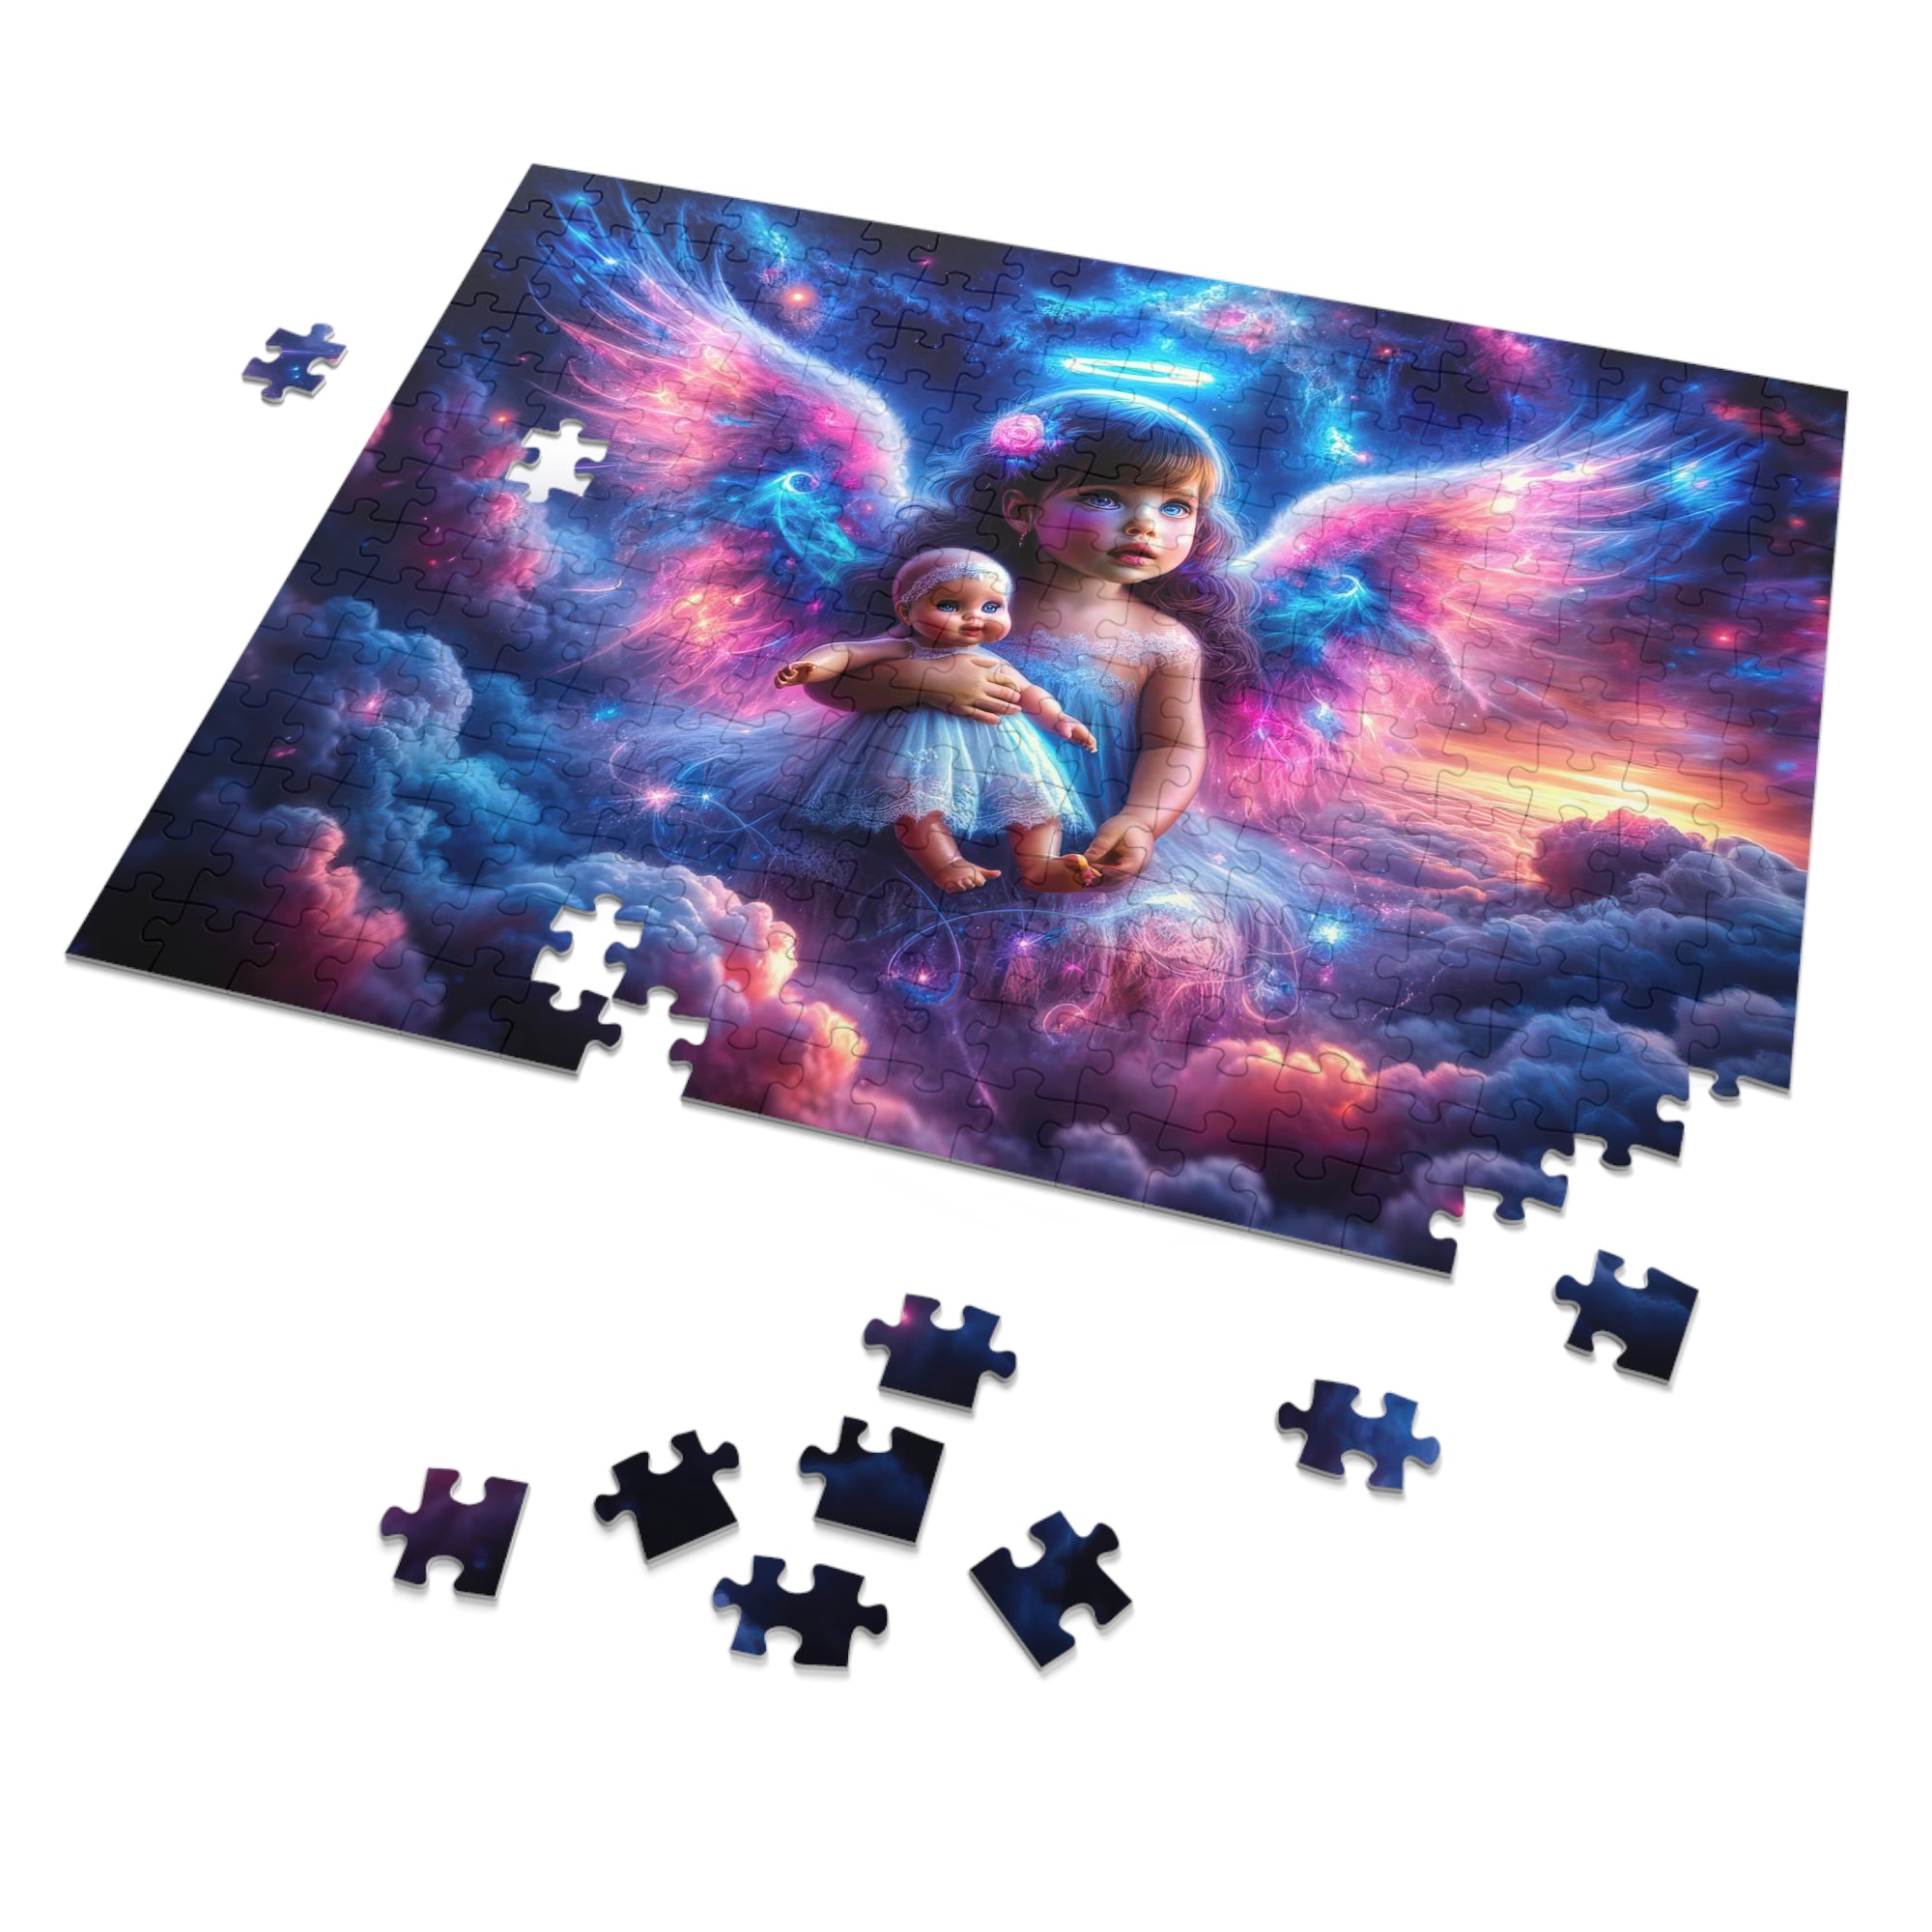 The Celestial Innocence Jigsaw Puzzle